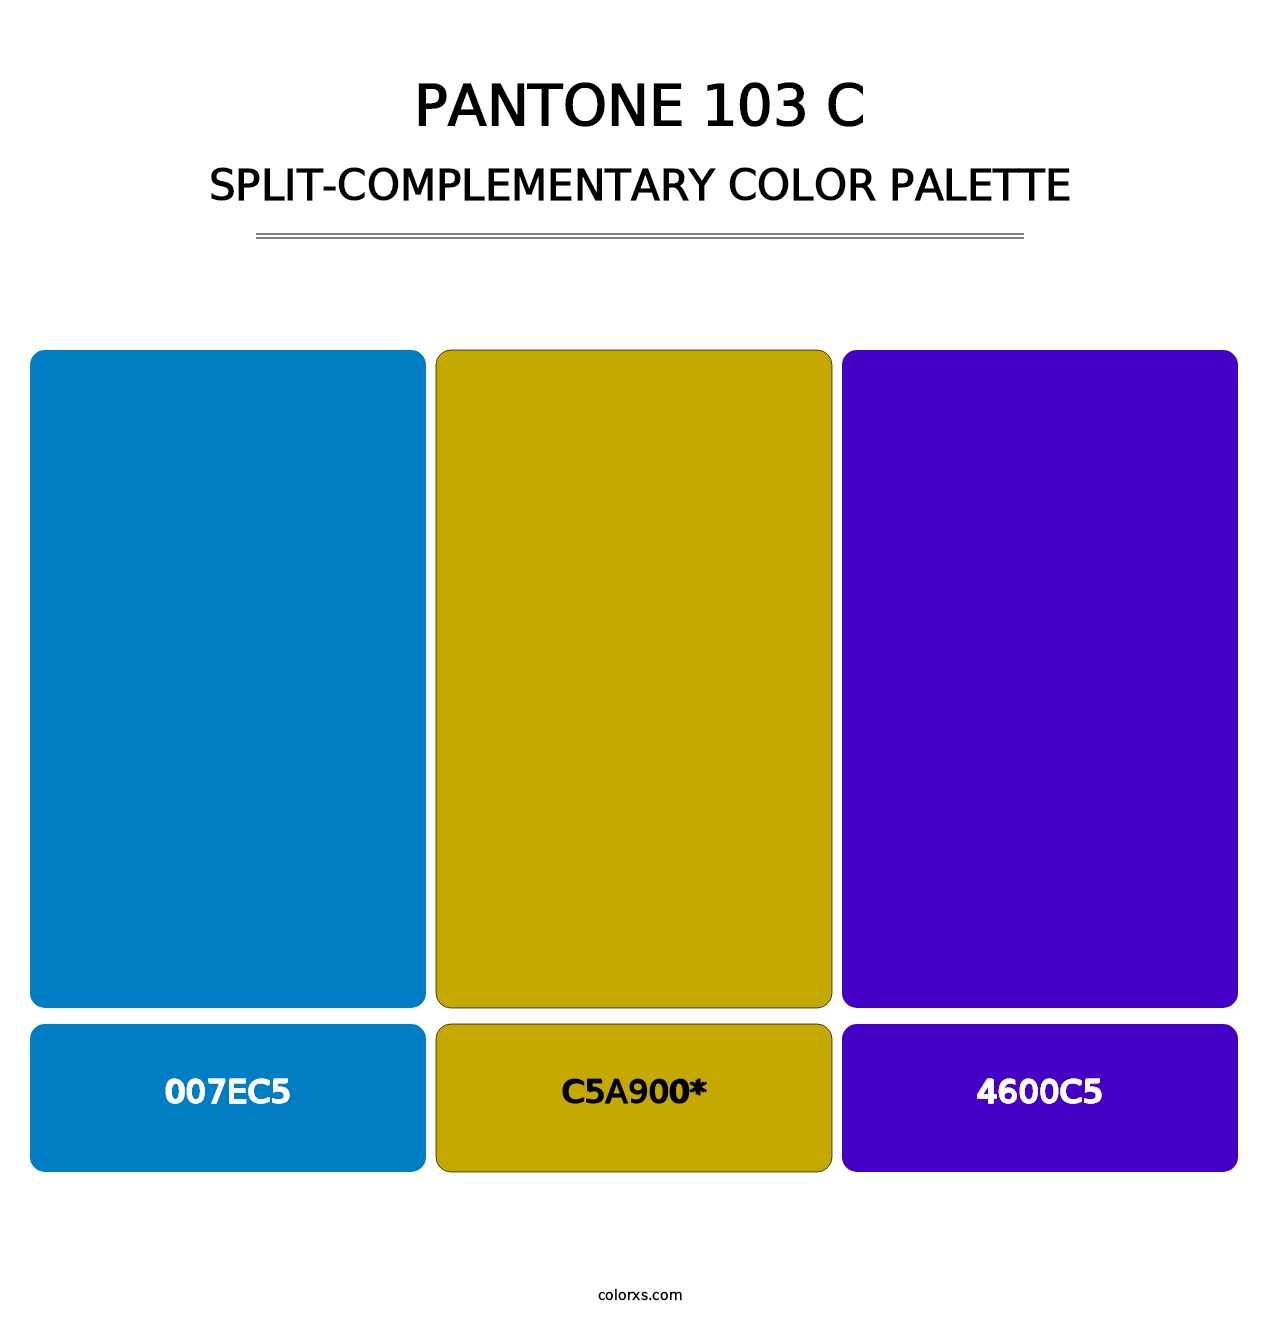 PANTONE 103 C - Split-Complementary Color Palette